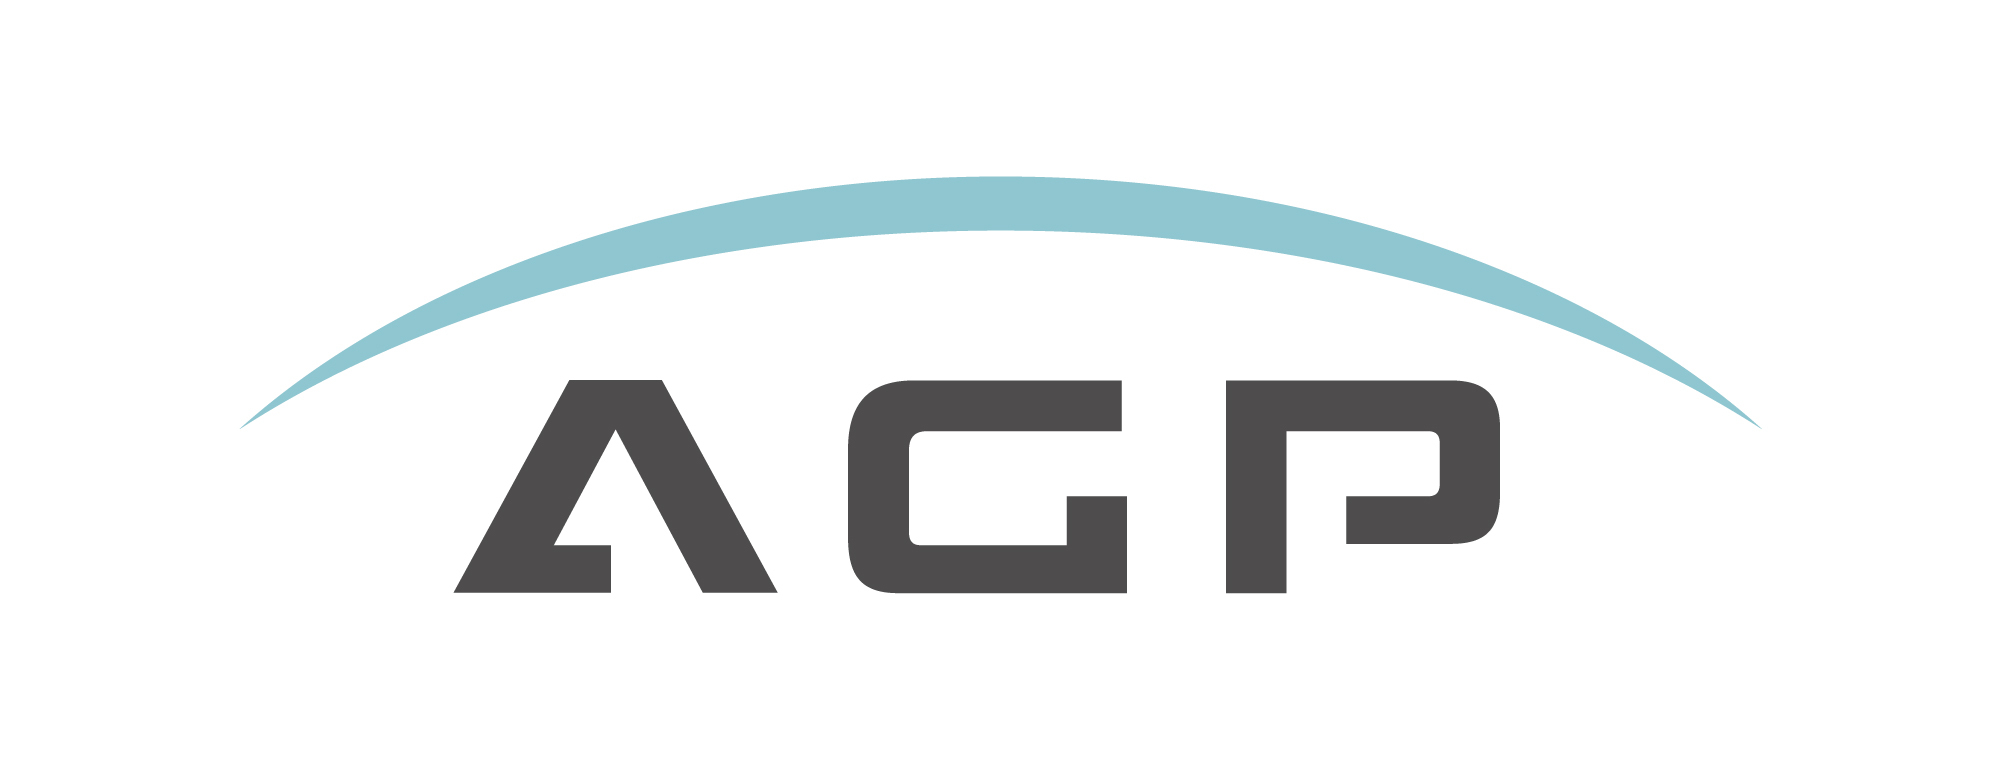 AGP Letter Logo, agp logo icon design Stock Vector | Adobe Stock